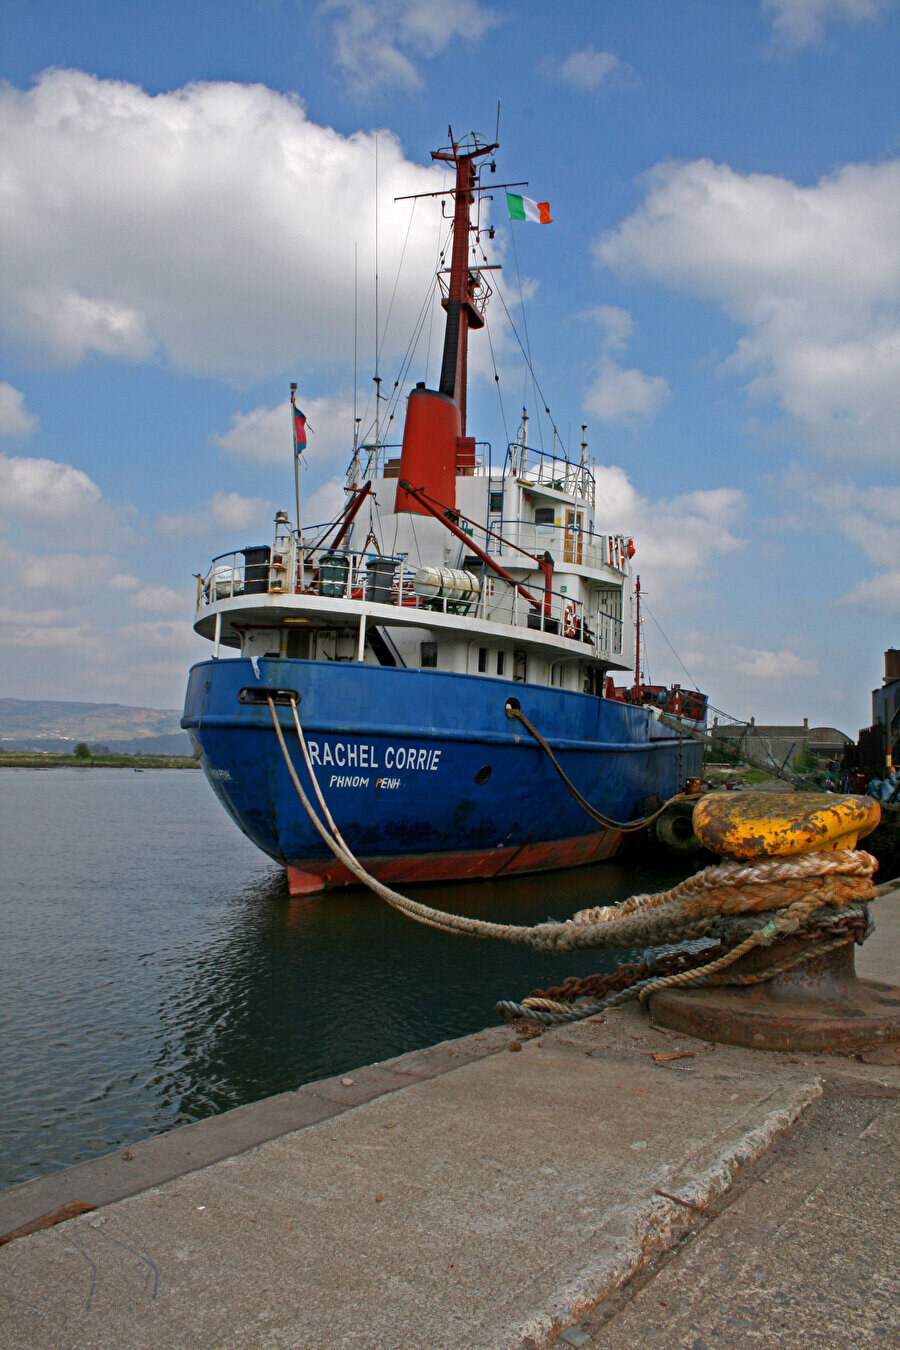 2010 yılında Gazze'ye doğru yola çıkan İrlandalı bir yardım gemisine Rachel'ın adı verilmişti.